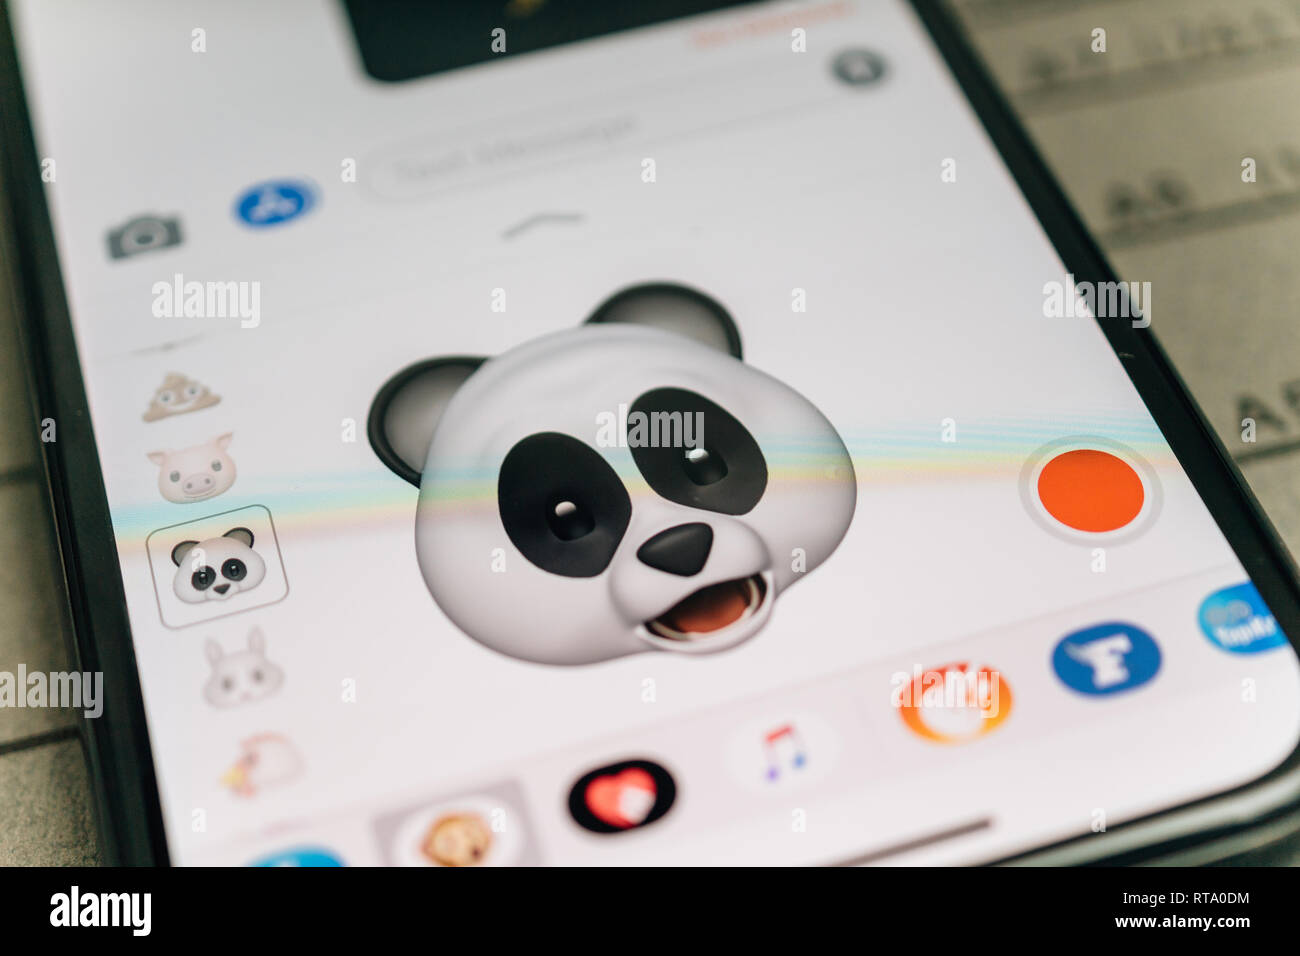 Parigi, Francia - Nov 9 2017: Orso Panda 3d animoji gli Emoji generata dal volto ID sistema di riconoscimento facciale con faccia stupita emozione close-up del nuovo iphone X 10 Display - tilt-shift lente utilizzata Foto Stock